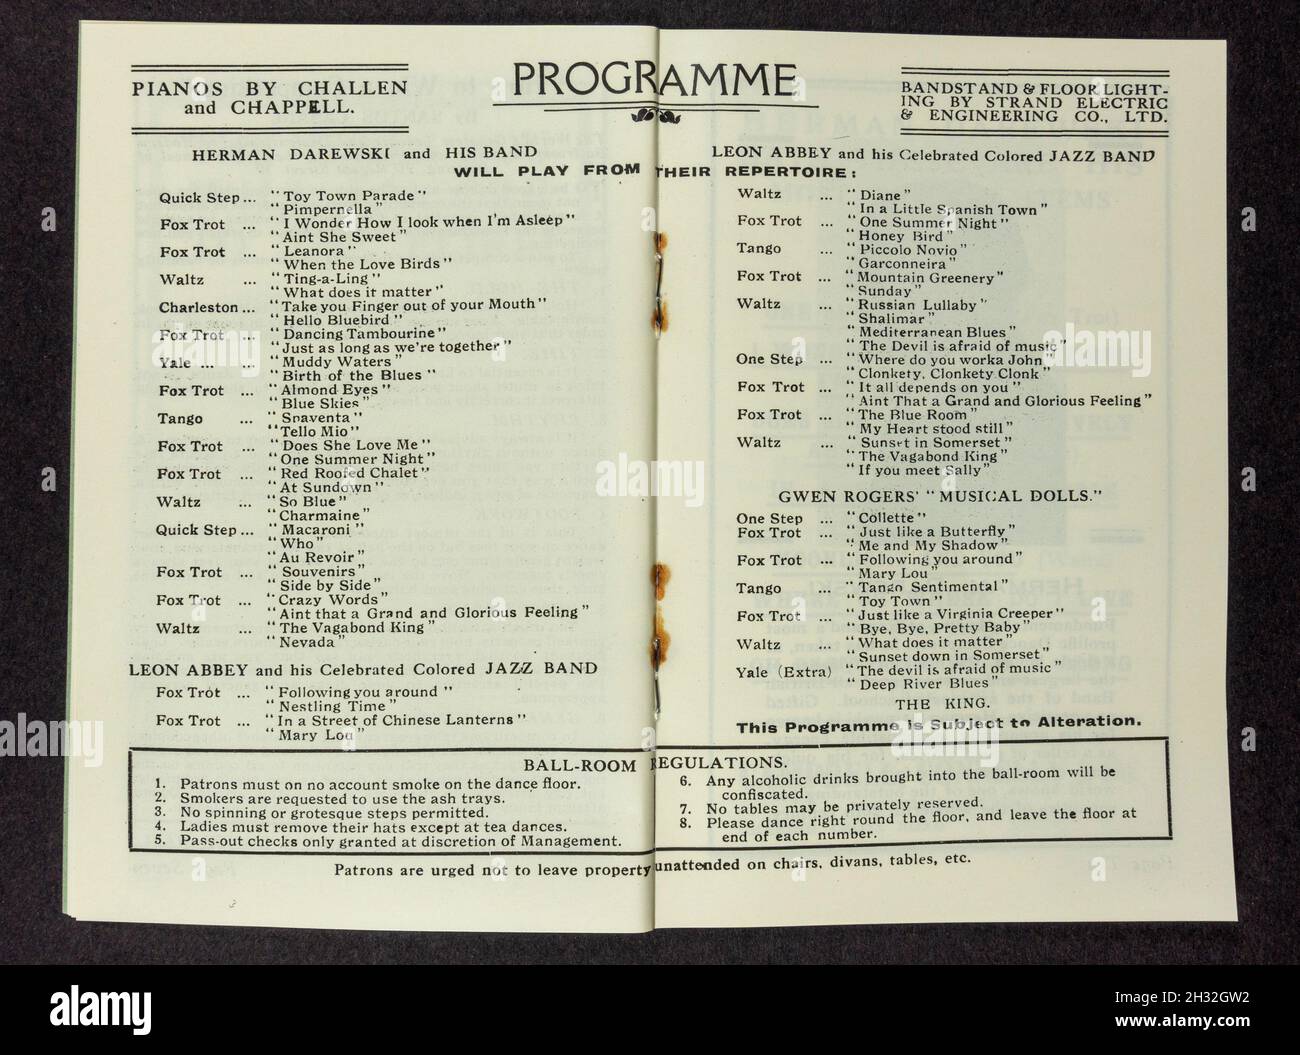 Programma giornaliero di danza/musica nelle pagine centrali del programma giornaliero 1920s per la sala da ballo Olympia, Stagione 1927-28 (replica). Foto Stock